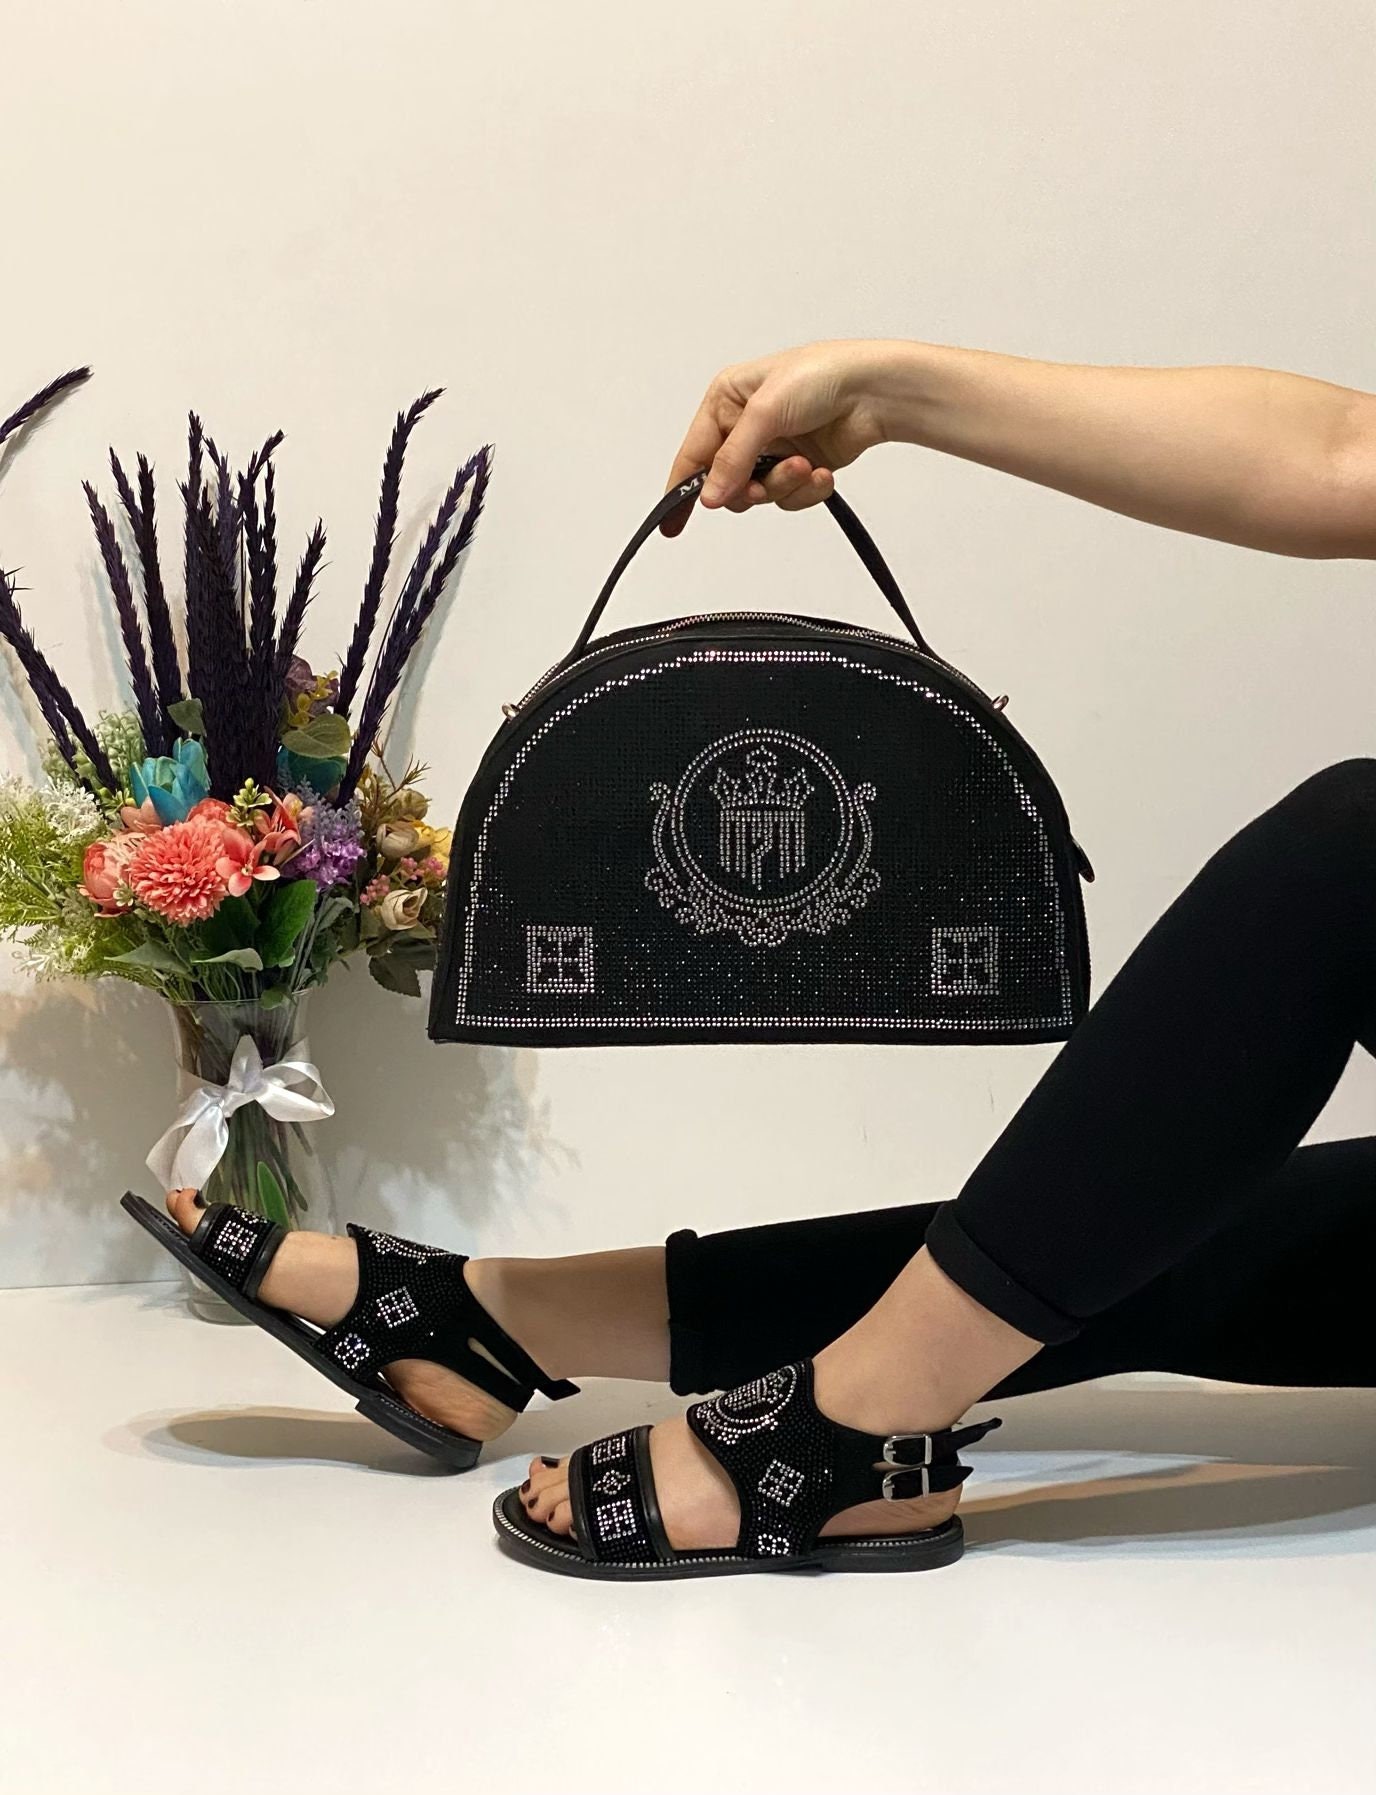 Miss Melisa Shoe and Bag Turkey 2022 Model Slippers Set Tr145 - 130.00  Dolar + KDV